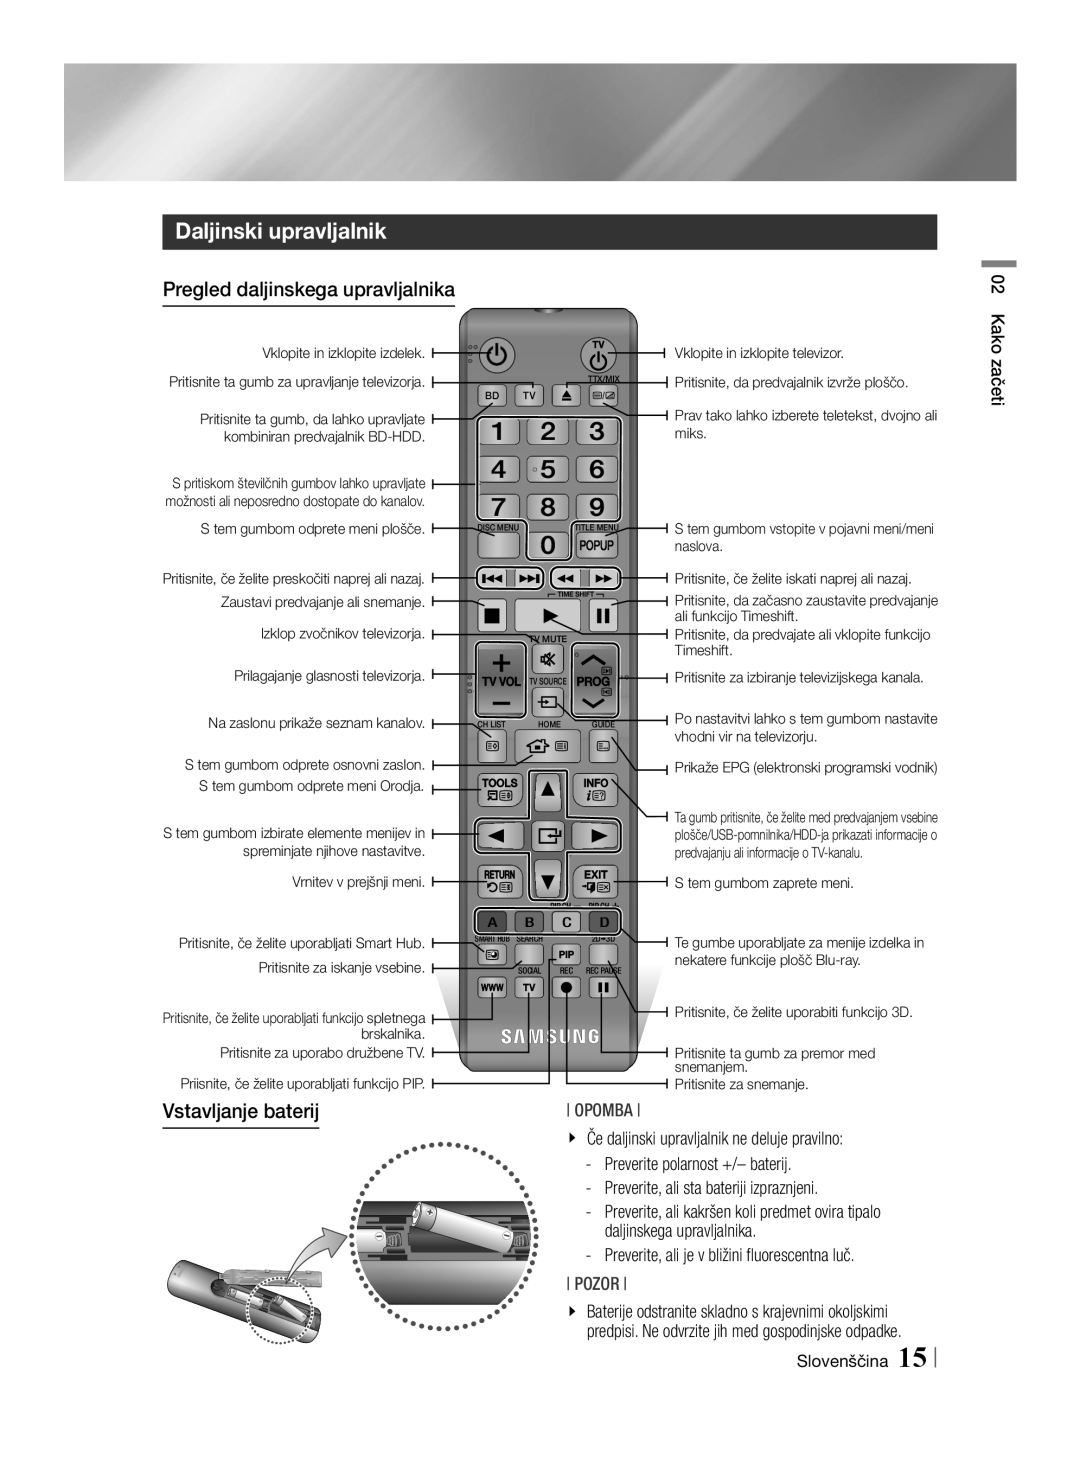 Samsung BD-E8300/EN manual Daljinski upravljalnik, Pregled daljinskega upravljalnika, Vstavljanje baterij, Pozor, Opomba 